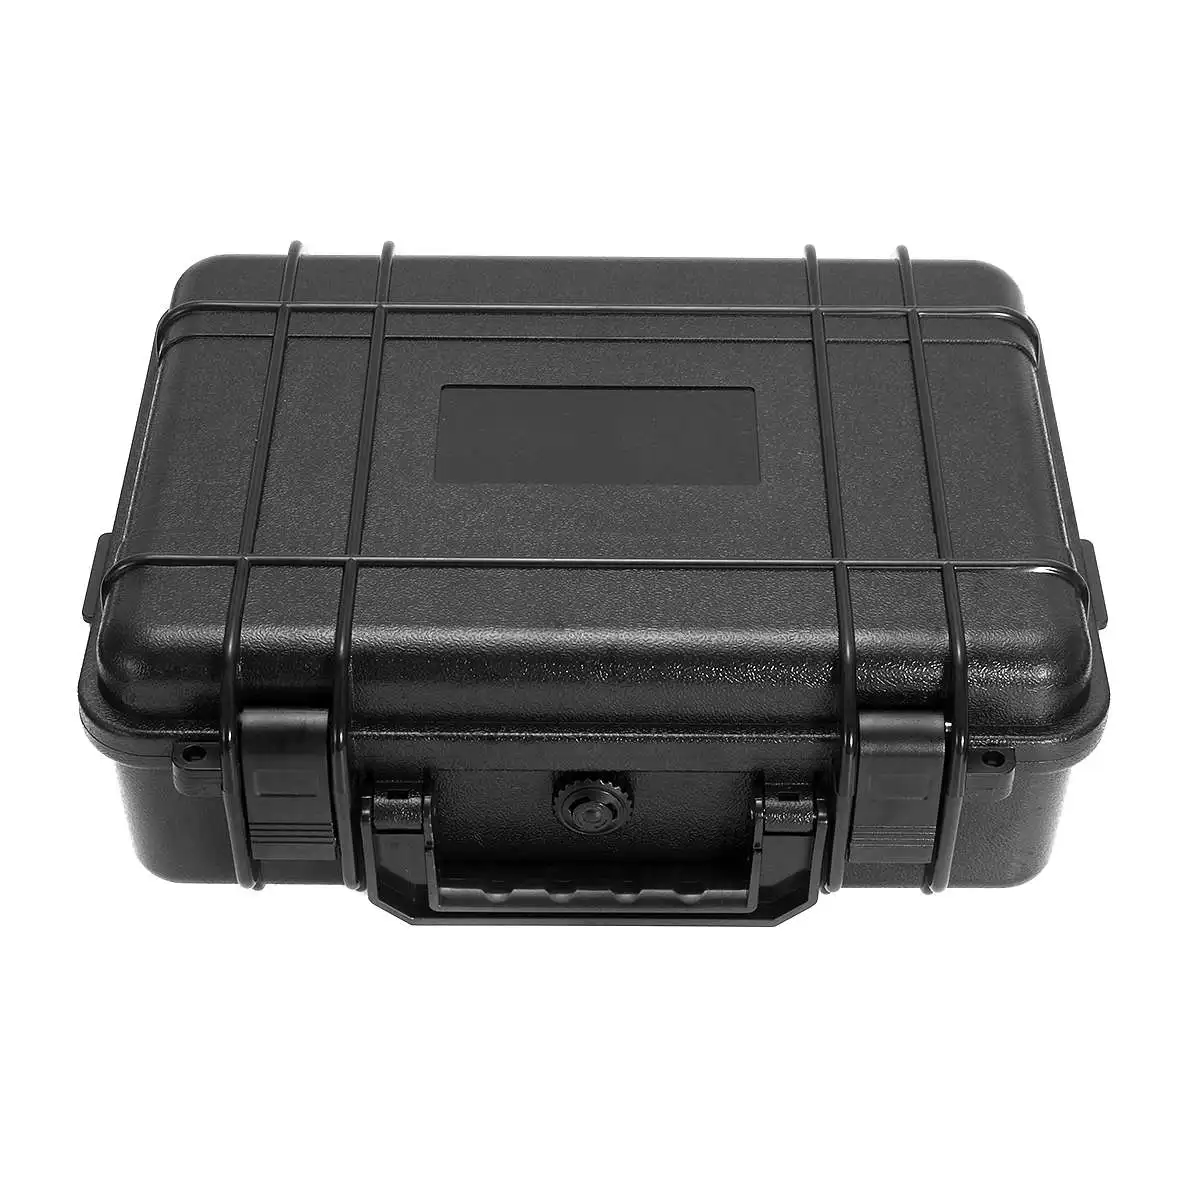 3 размера Водонепроницаемый Жесткий Чехол для инструментов пластиковый ящик для инструментов оборудование защитный ящик для хранения Органайзер портативный контейнер черный